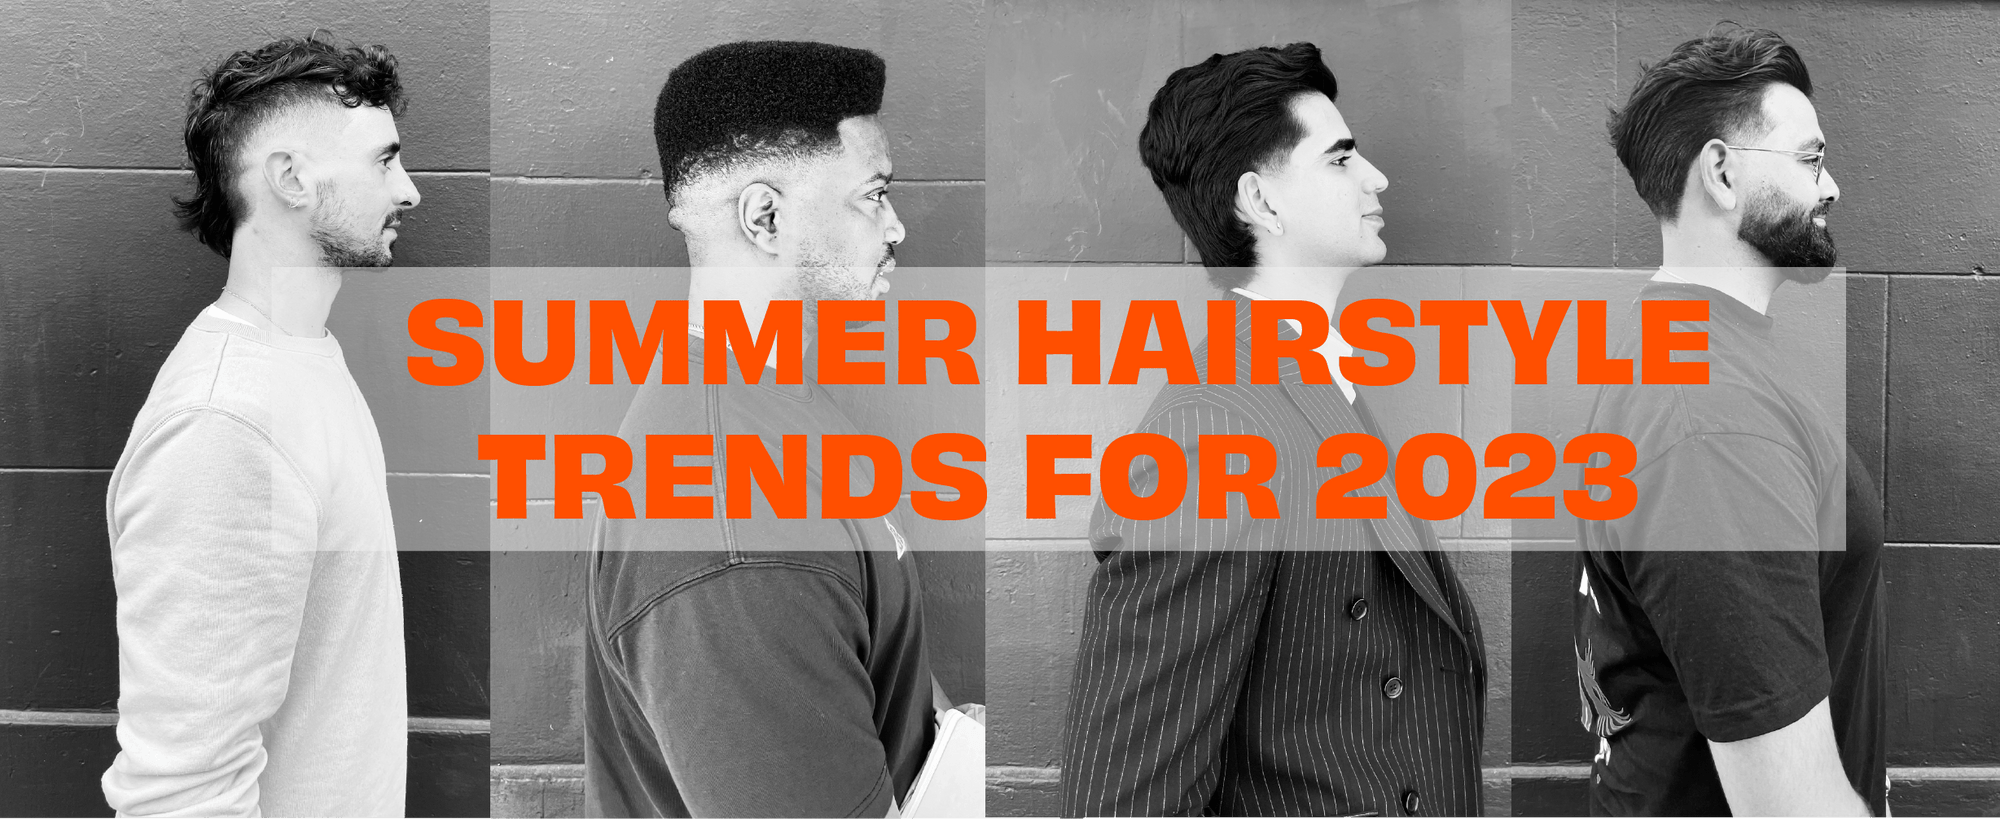 Trending Hairstyles for Grooms in 2023 - StyleSpeak